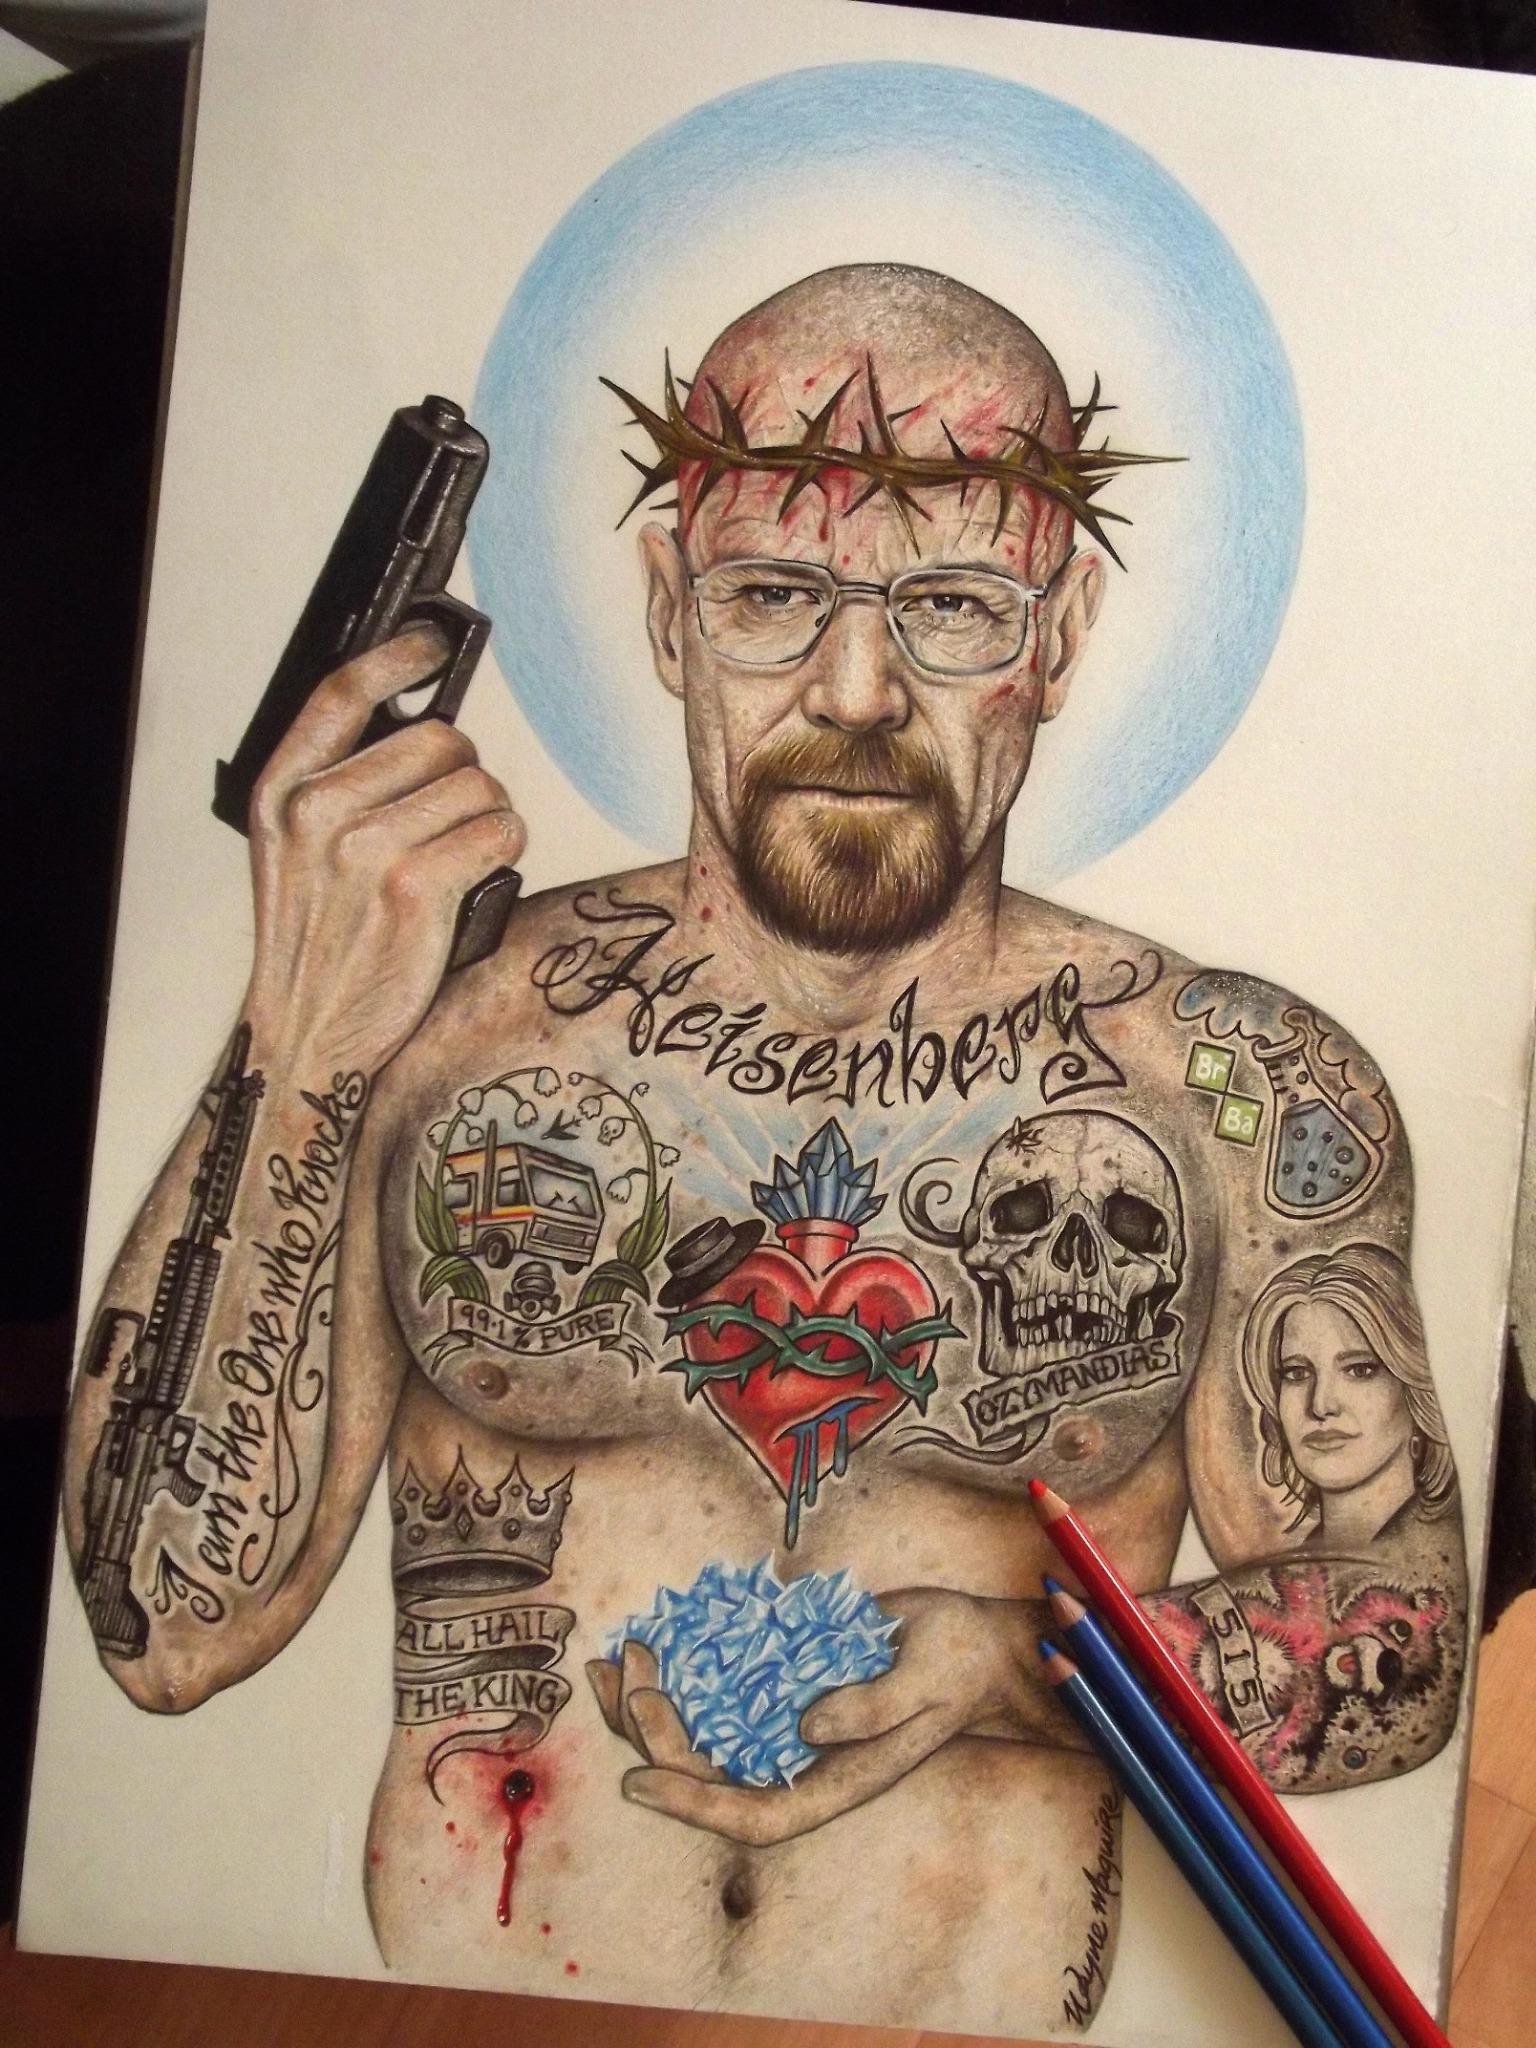 INKED IKONS on Twitter: "Heisenberg inked 2.0 finally complete.. #